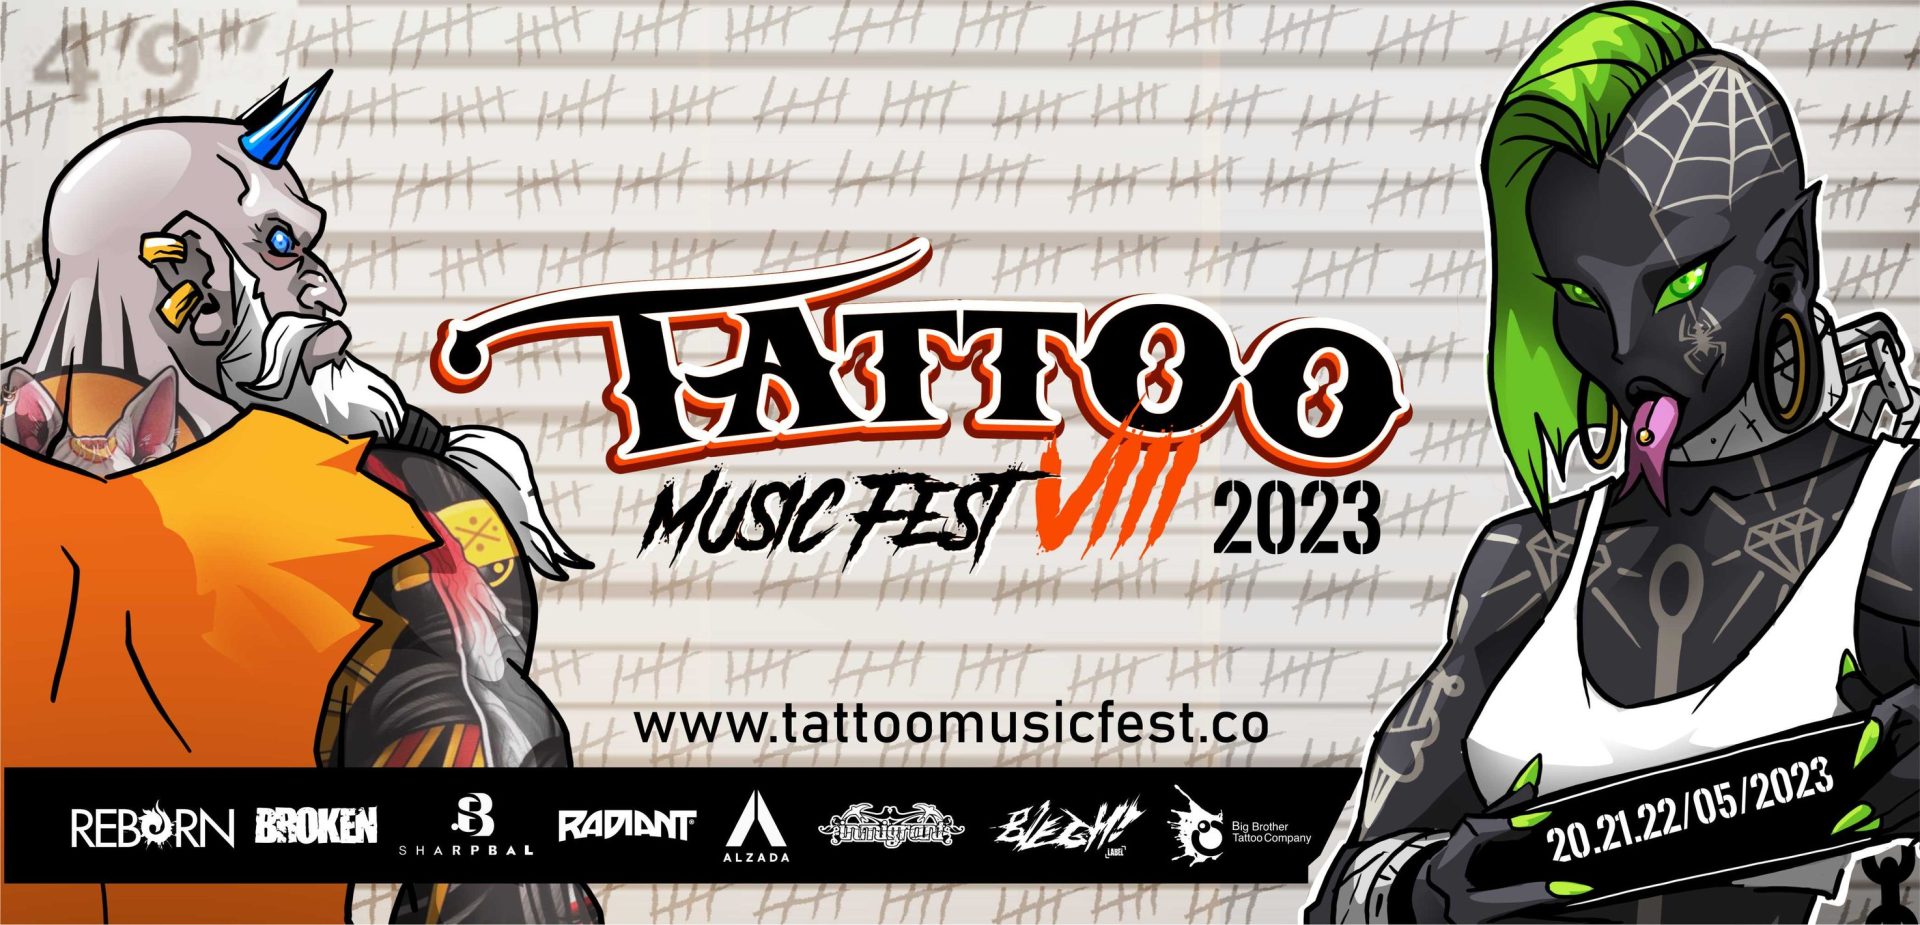 Tattoo Music Fest 2023